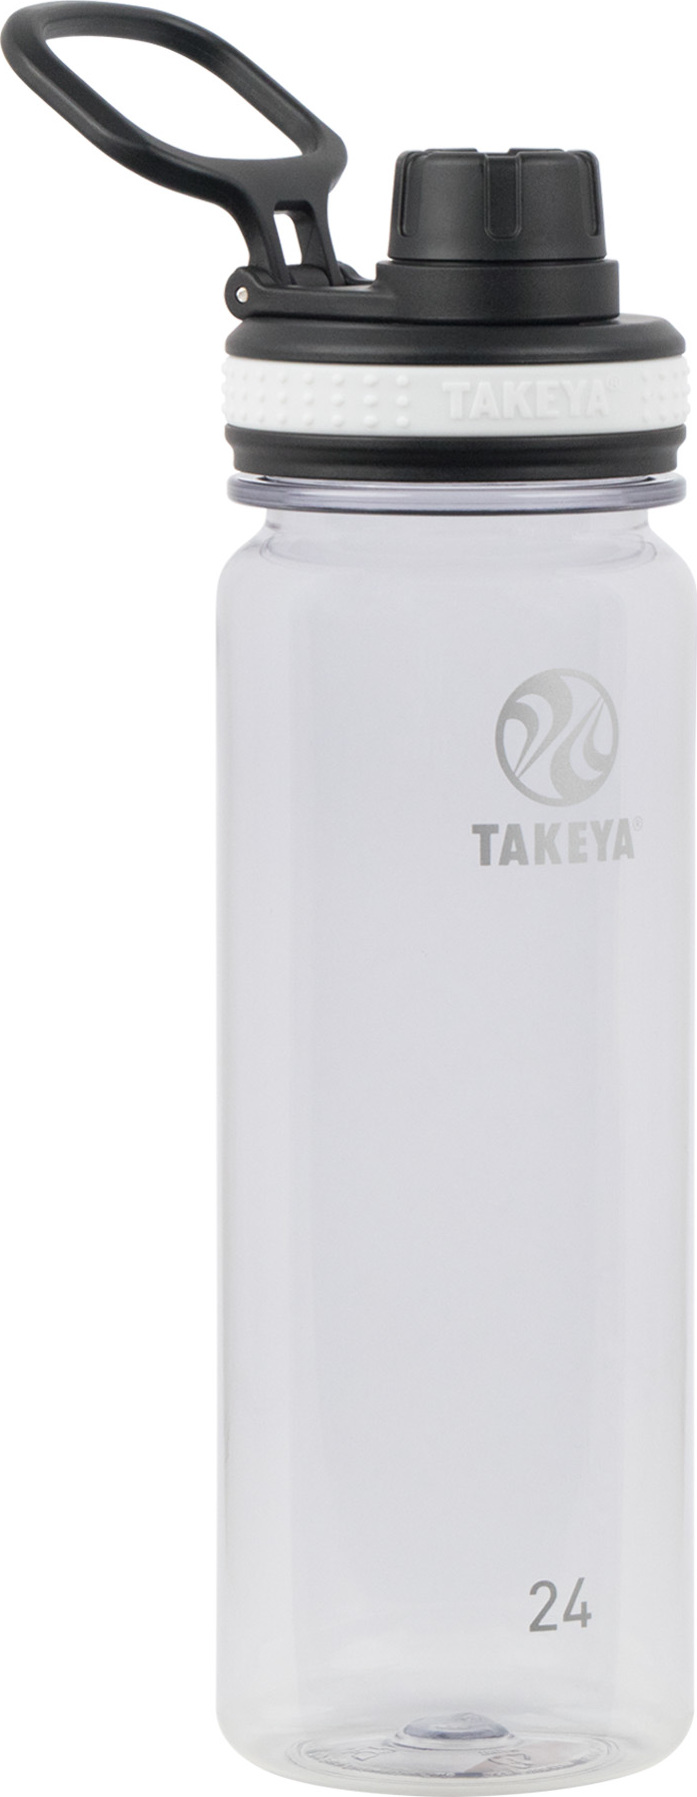 Takeya Tritan Bottle 700 ml Clear 700 ml, Clear